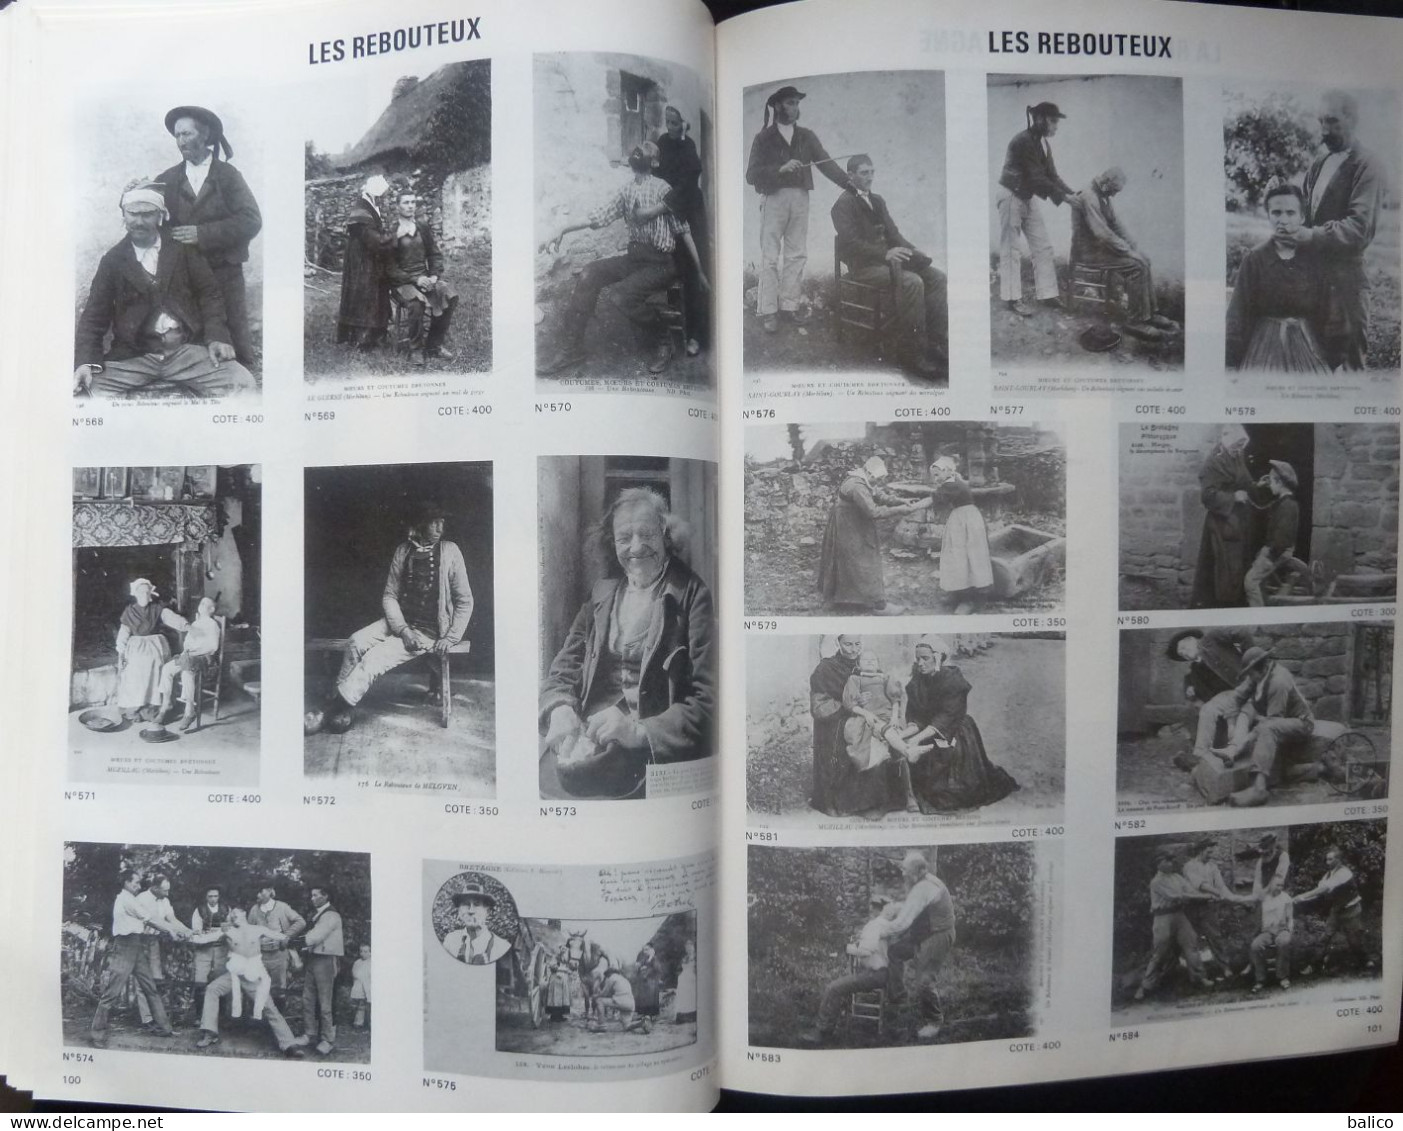 Argus de Cartes Postales Anciennes  "BAUDET" - Toute La BRETAGNE - Volume 3 - Tome 2 - 114 Pages